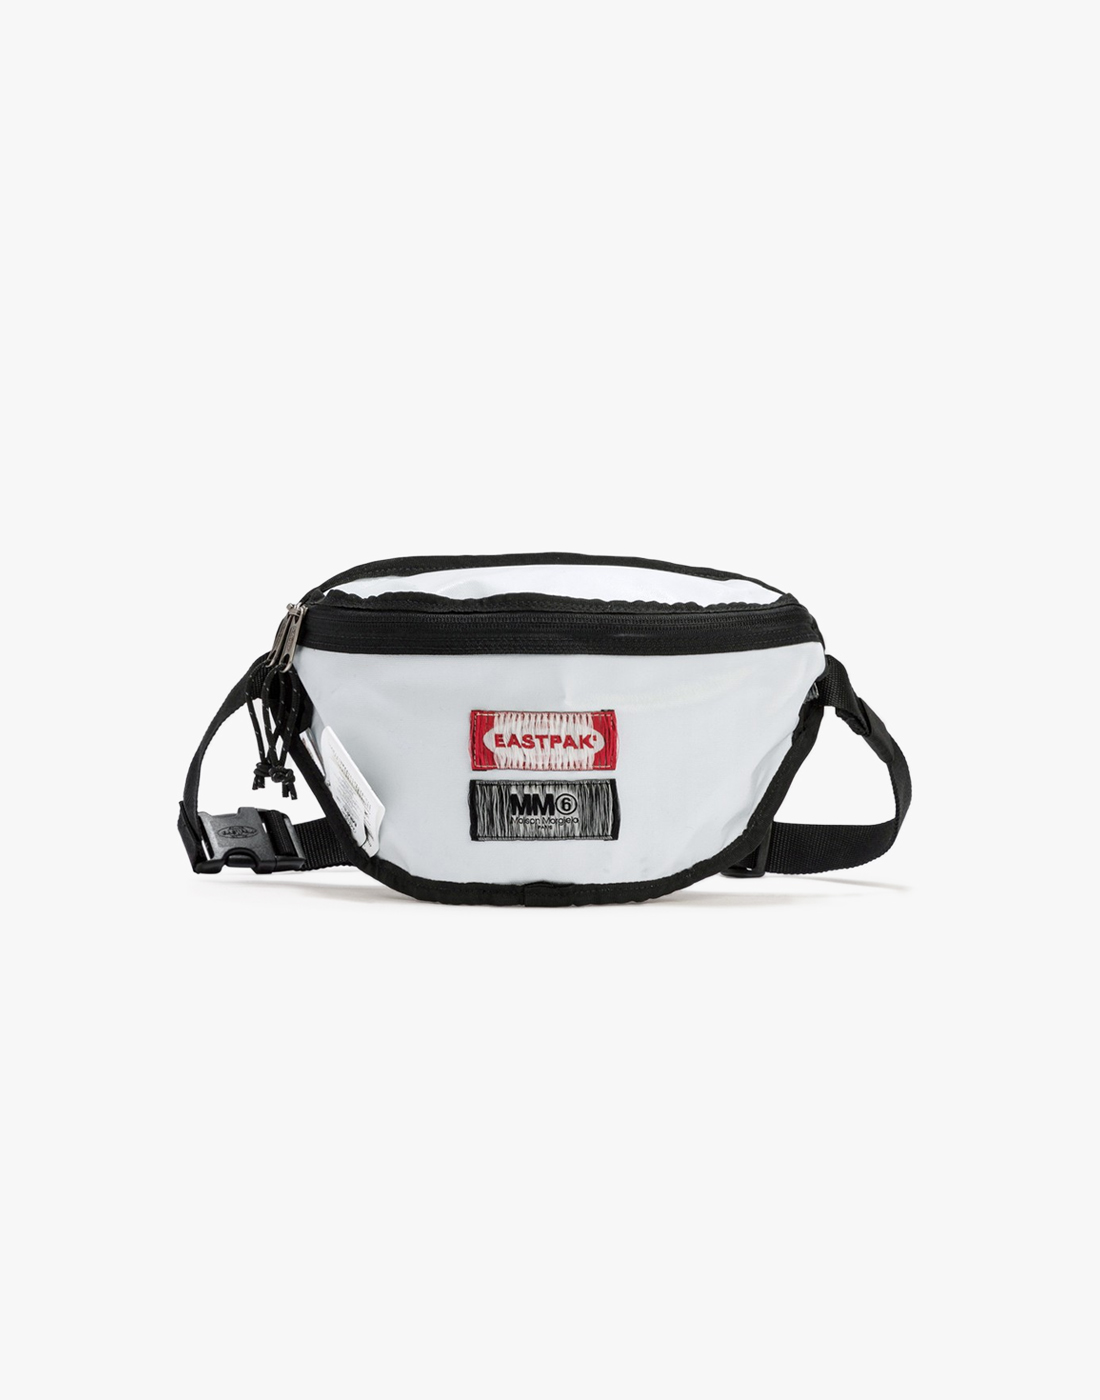 MM6 MAISON MARGIELA x EASTPAK Reversible Belt Bag, Black/White